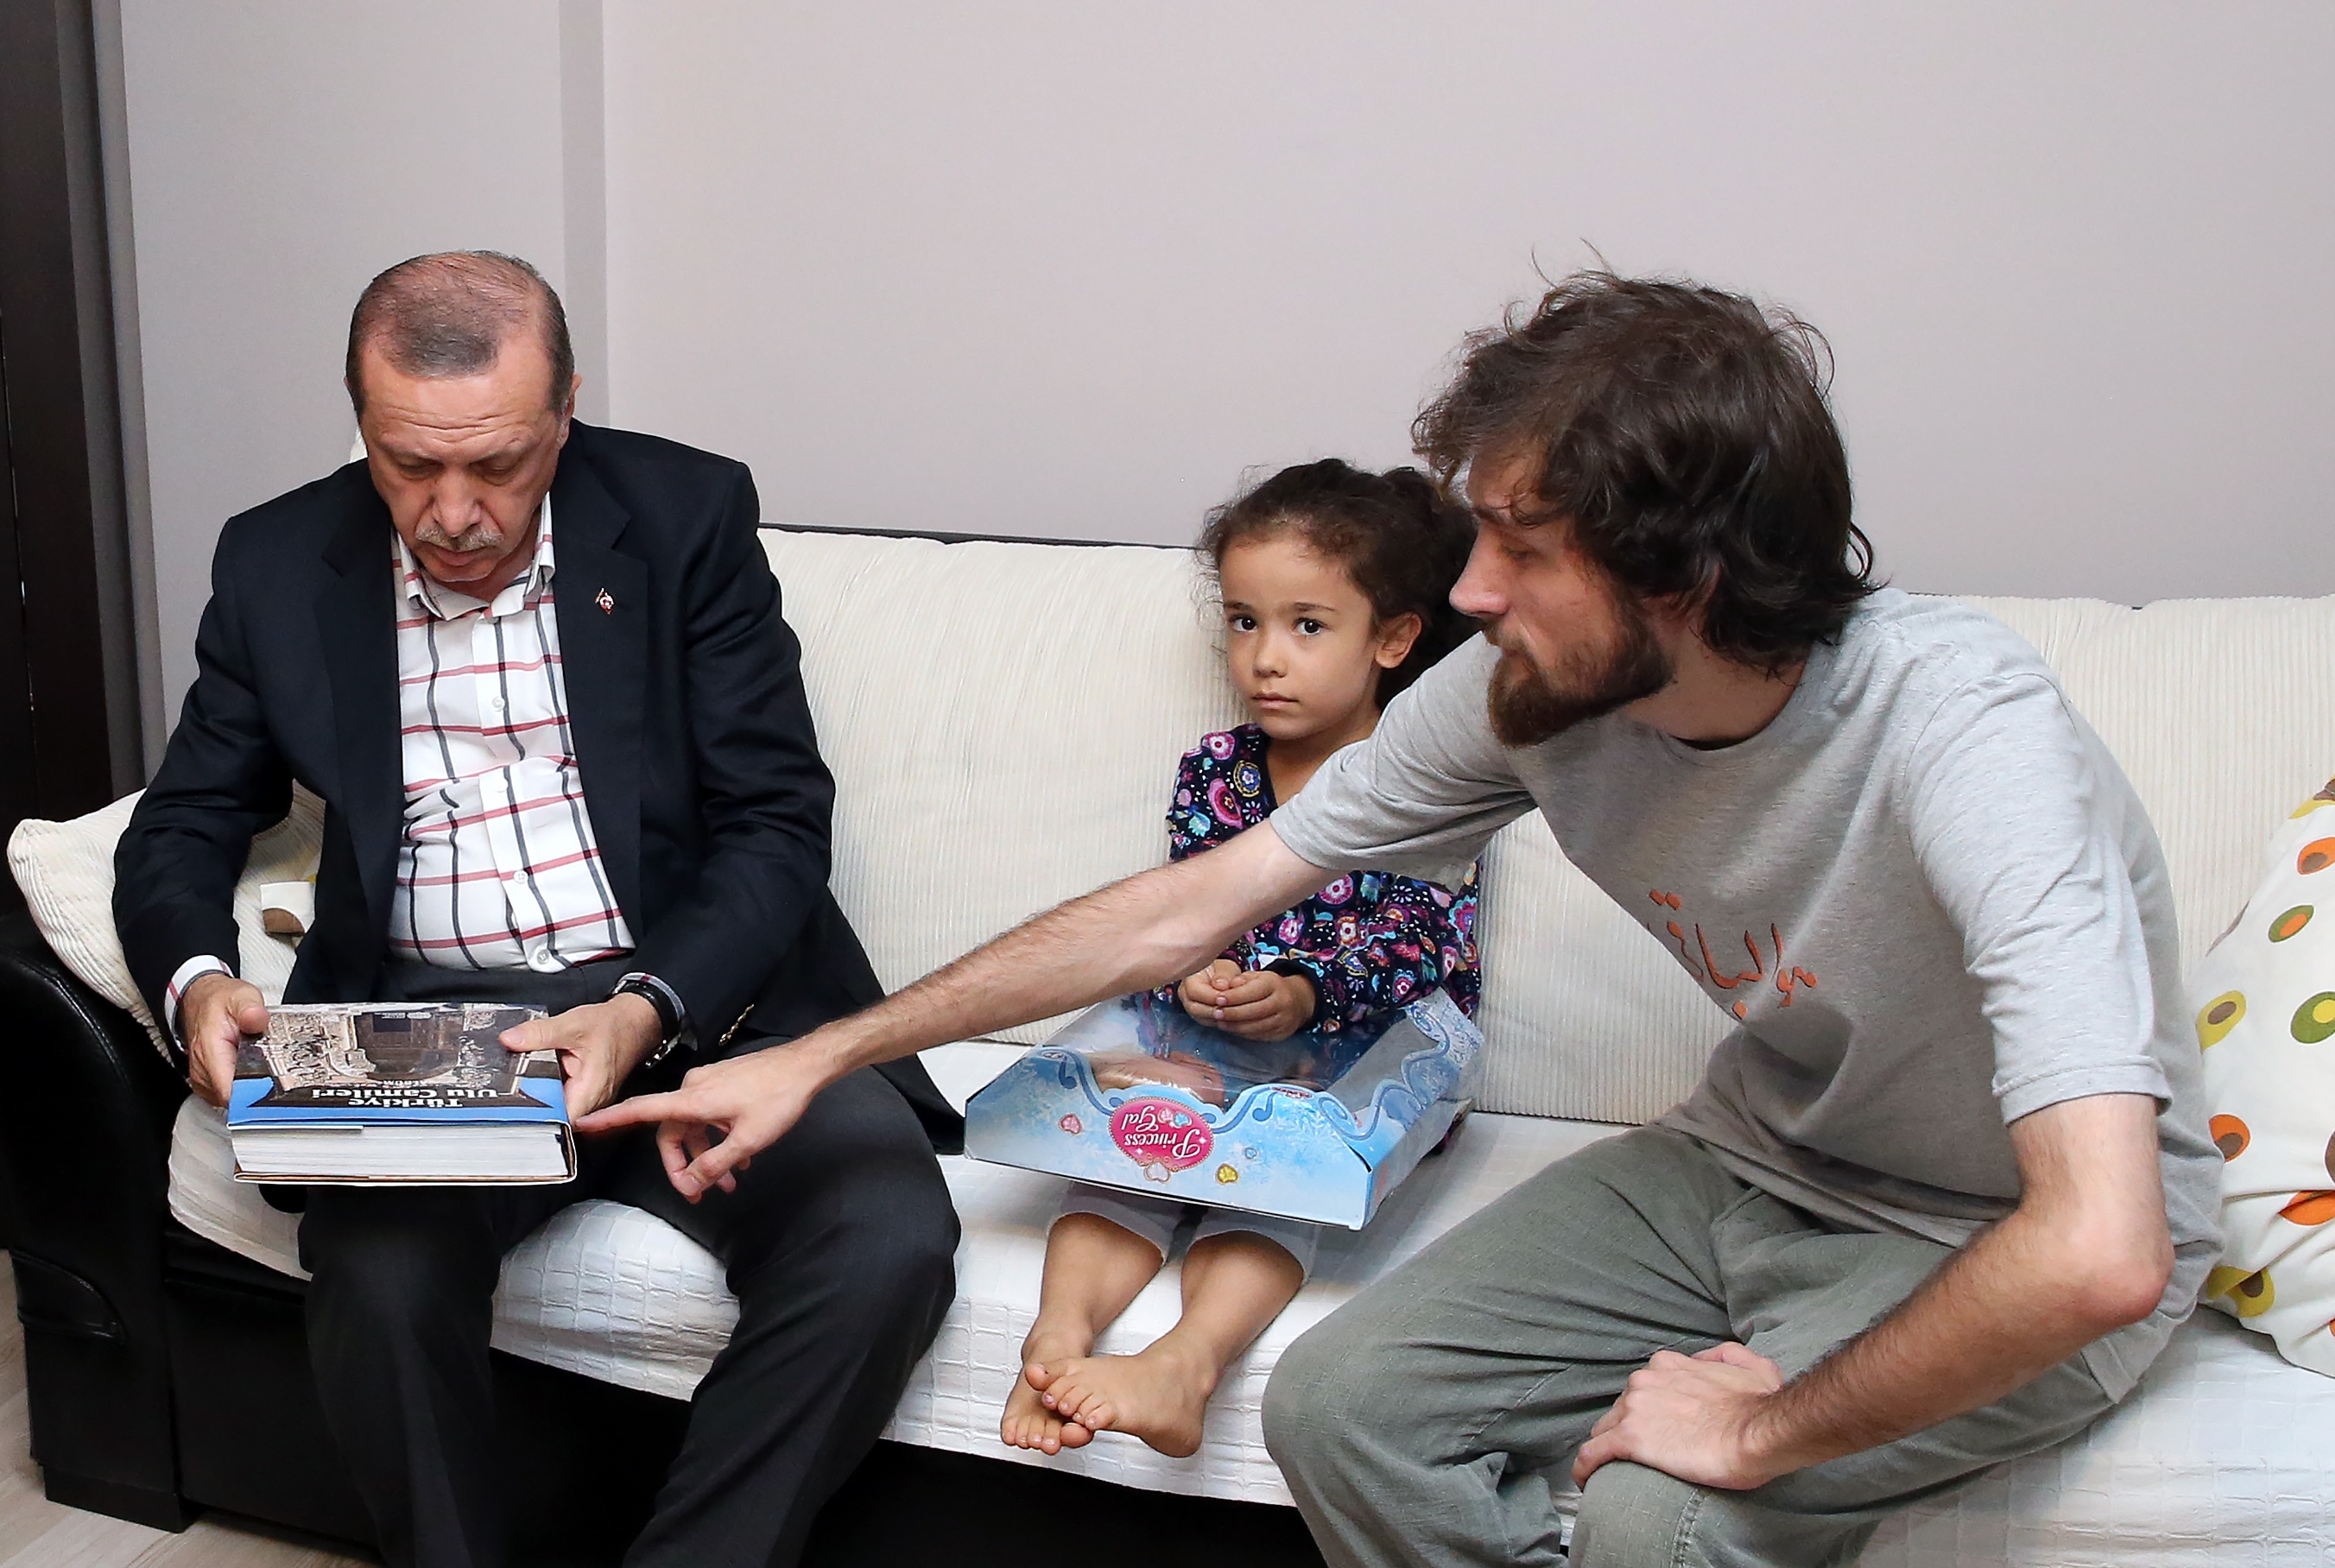 Сын мучуника Мустафы Джамбаза, Альпарслан Джамбаз рассказал президенту Эрдогану о книге своего отца под названием “Великие Мечети Турции”.